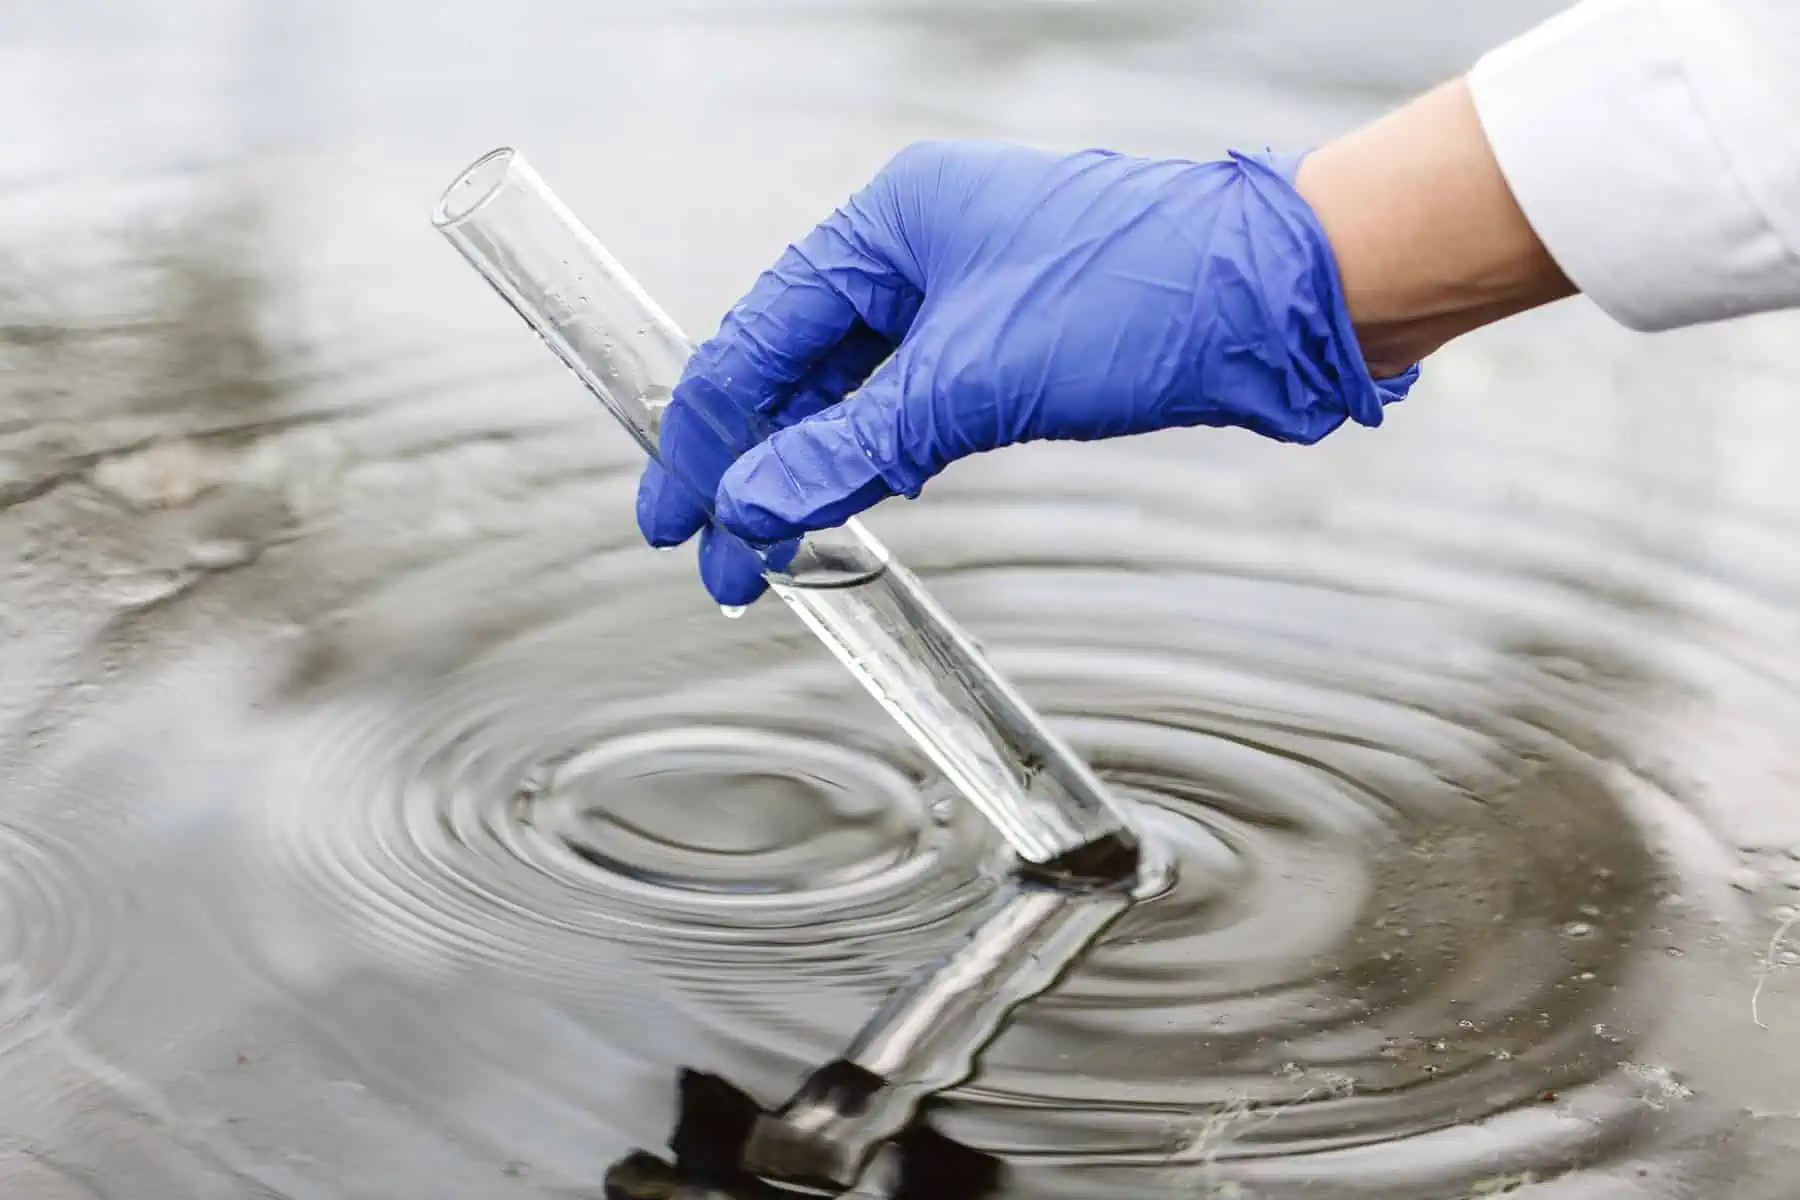 monitorean agua en filadelfia luego de derrame quimico